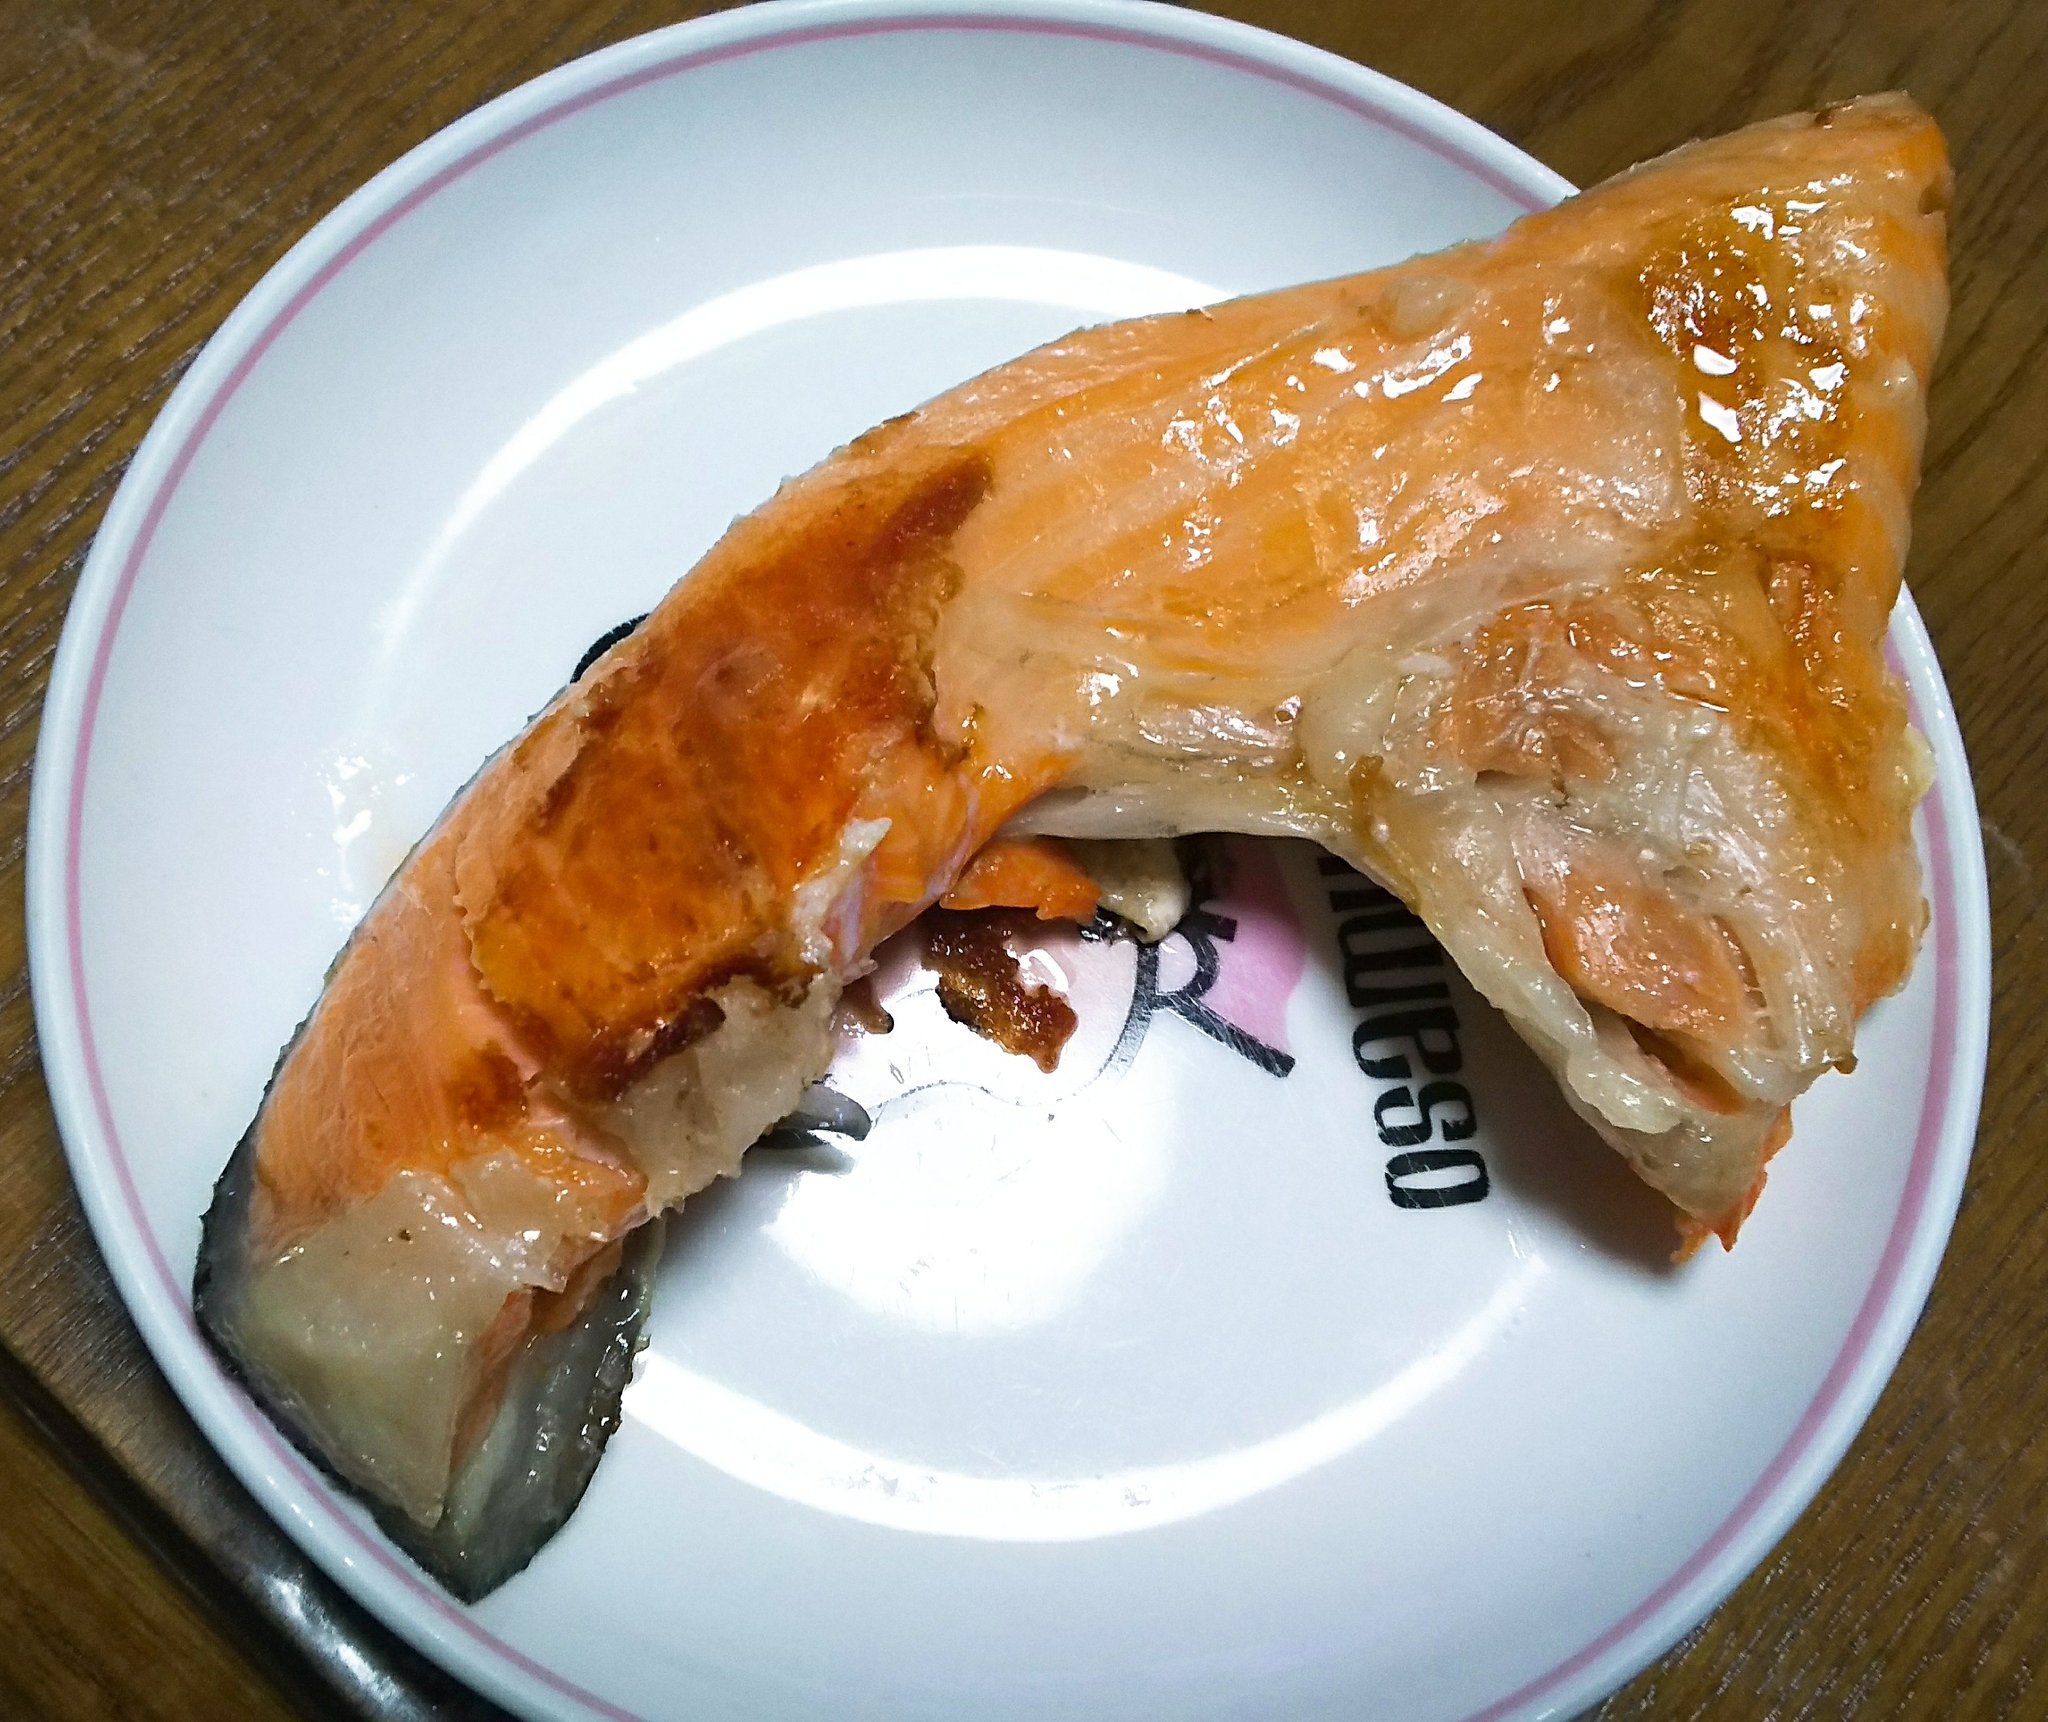 تويتر ひめここ Himekoko على تويتر 美味しい鮭カマをgetしたので 塩焼きにしていただきましたー 脂がのっていて 美味しかったです 鮭 アスタキサンチン 鮭カマ 鮭カマの塩焼き 鮭カマ塩焼き 飯テロ 魚 料理 T Co Amfbs1ihj2